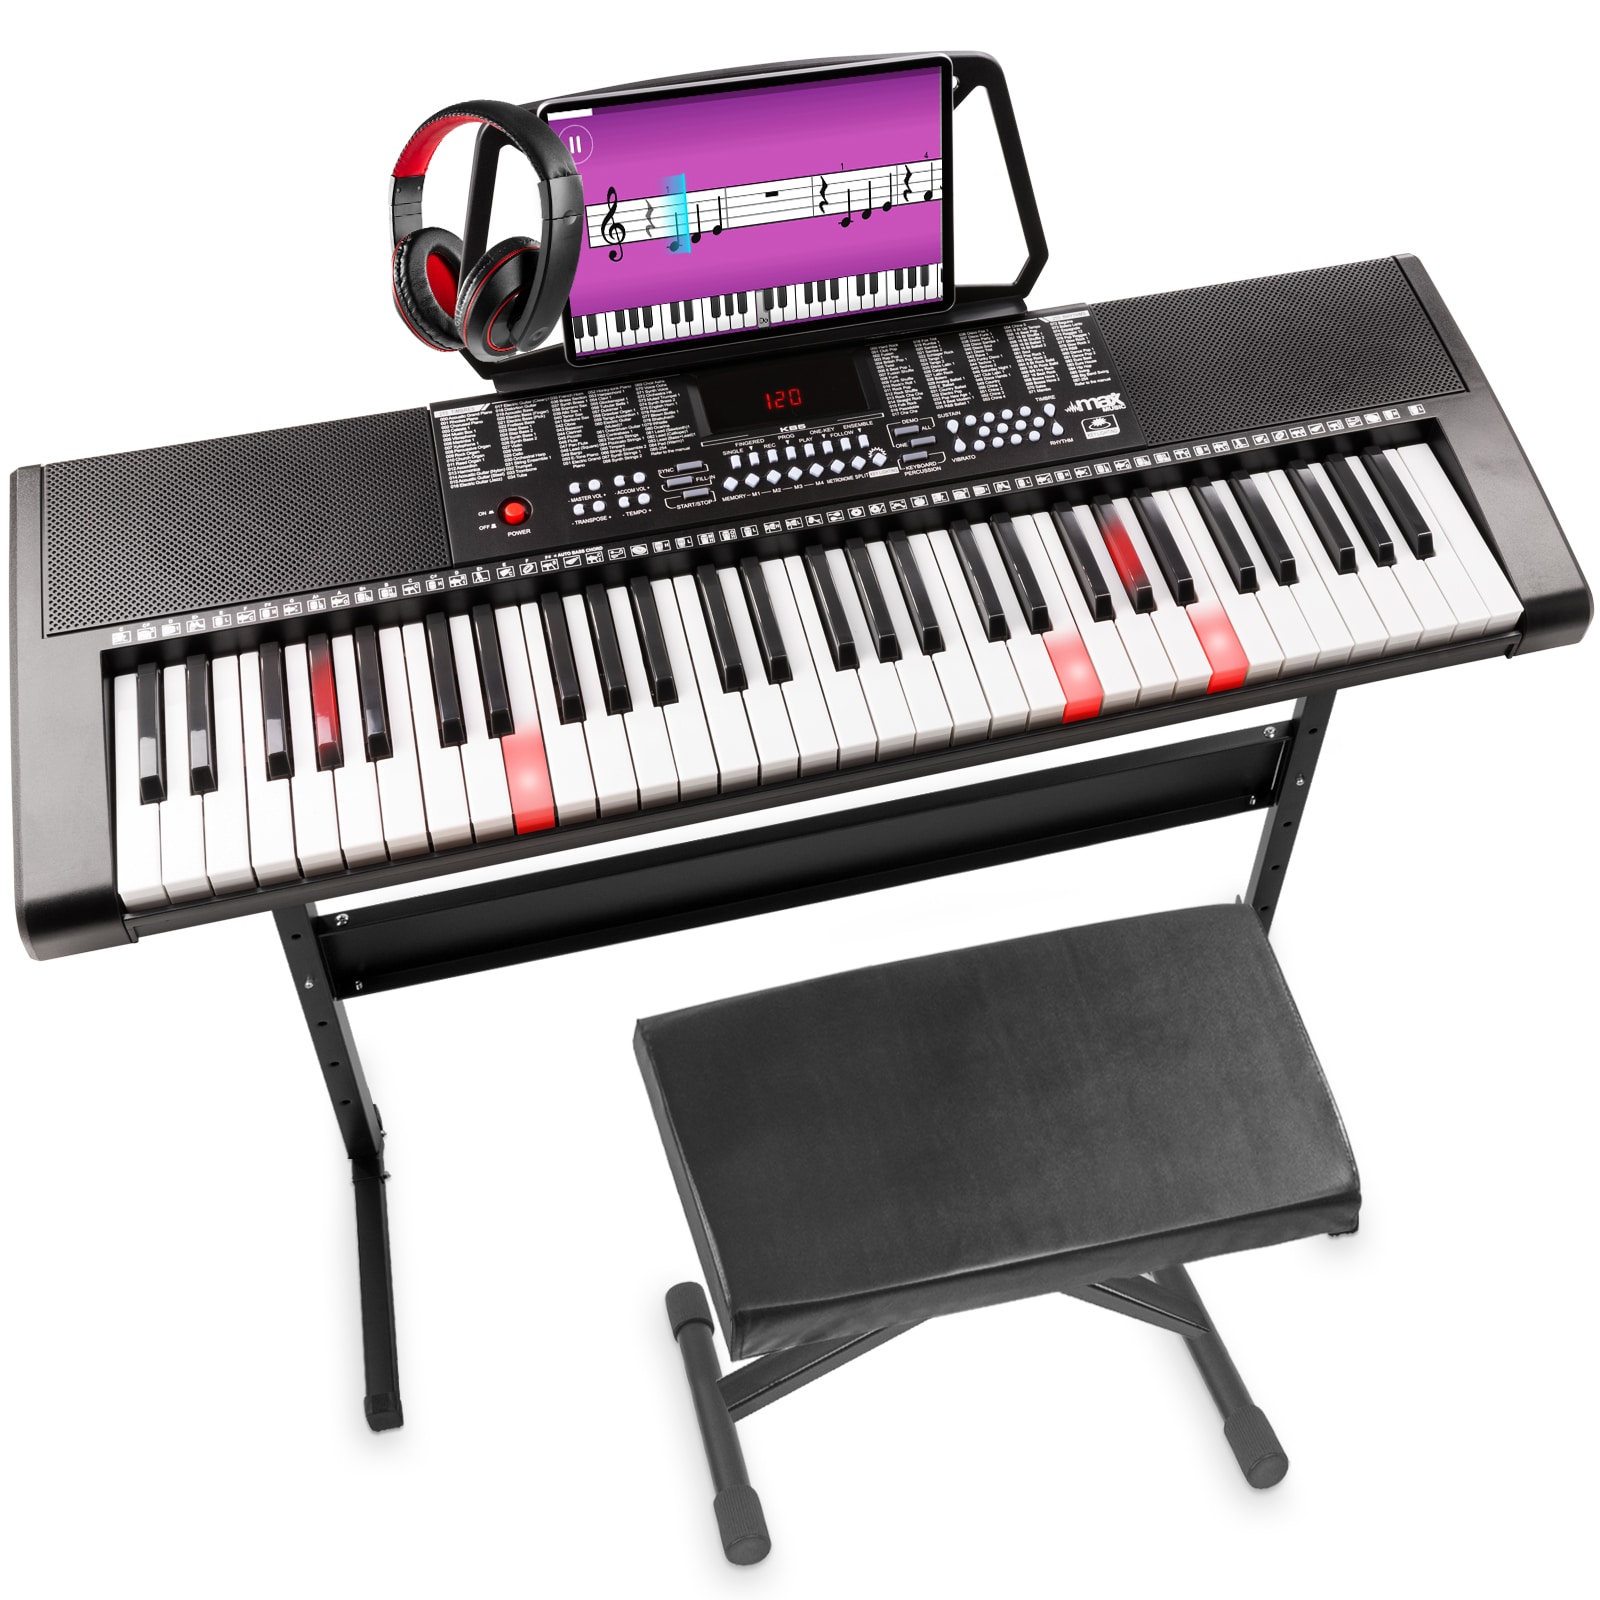 FYNDHÖRNAN: MAX KB5SET Keyboard digital piano-paket Premium set med 61-upplysta tangenter